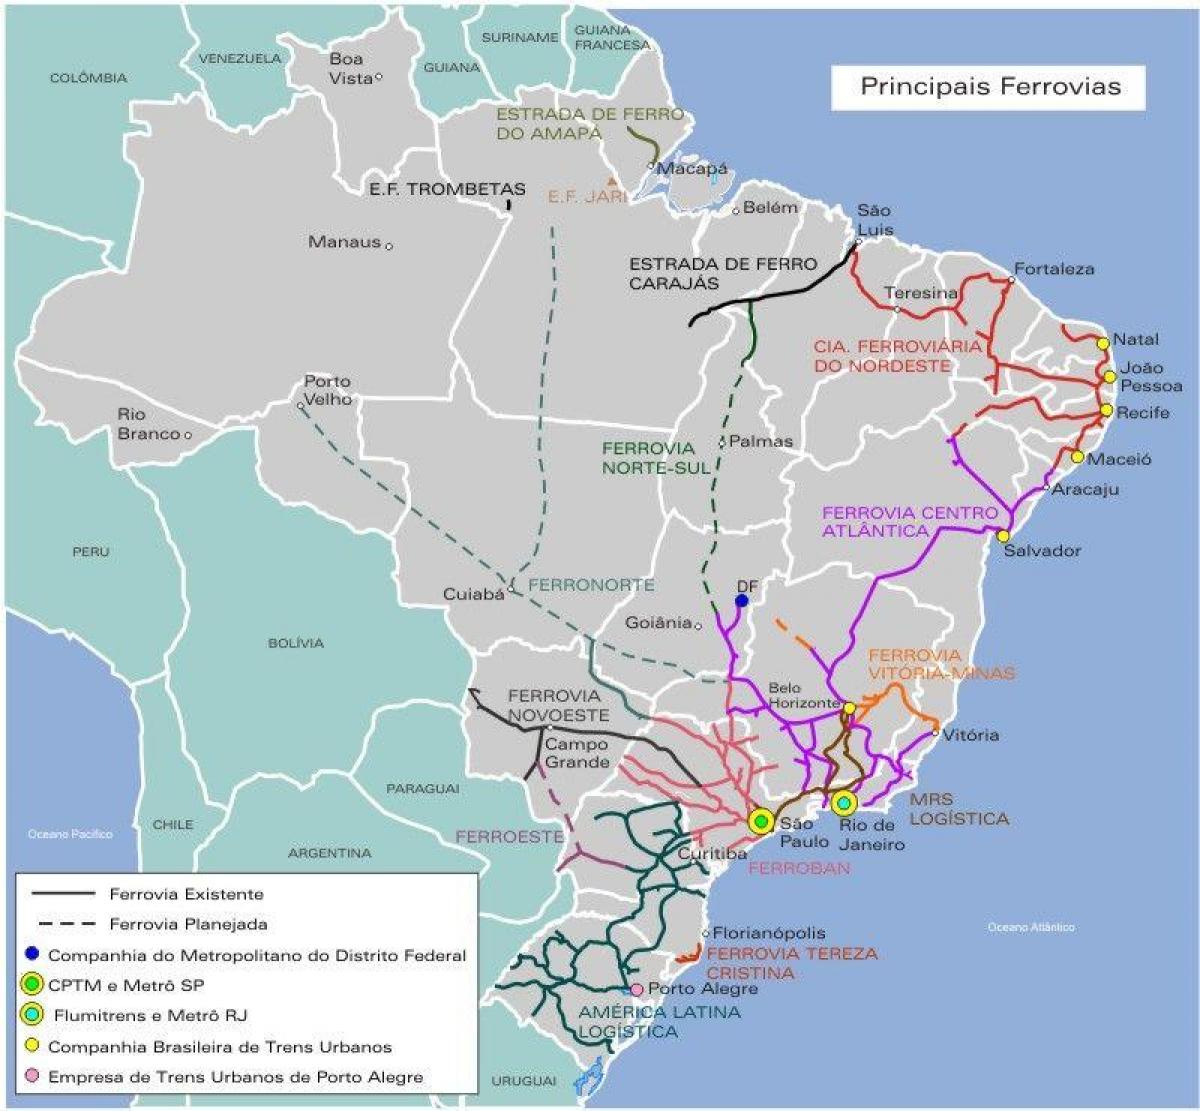 Le brésil, la carte ferroviaire